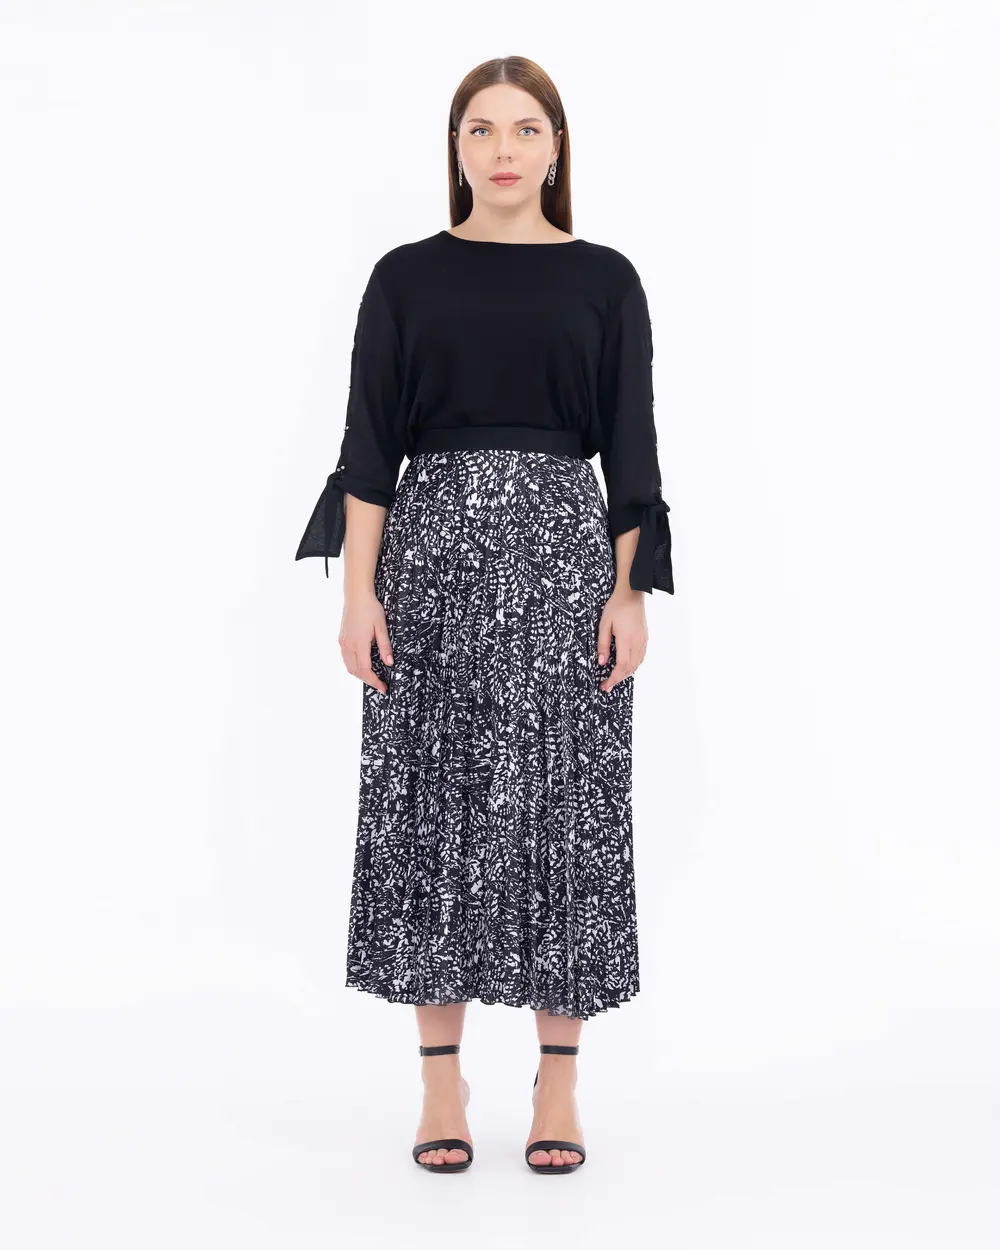 Elastic Waist Pleated Skirt  Black skirt, Black pleated skirt